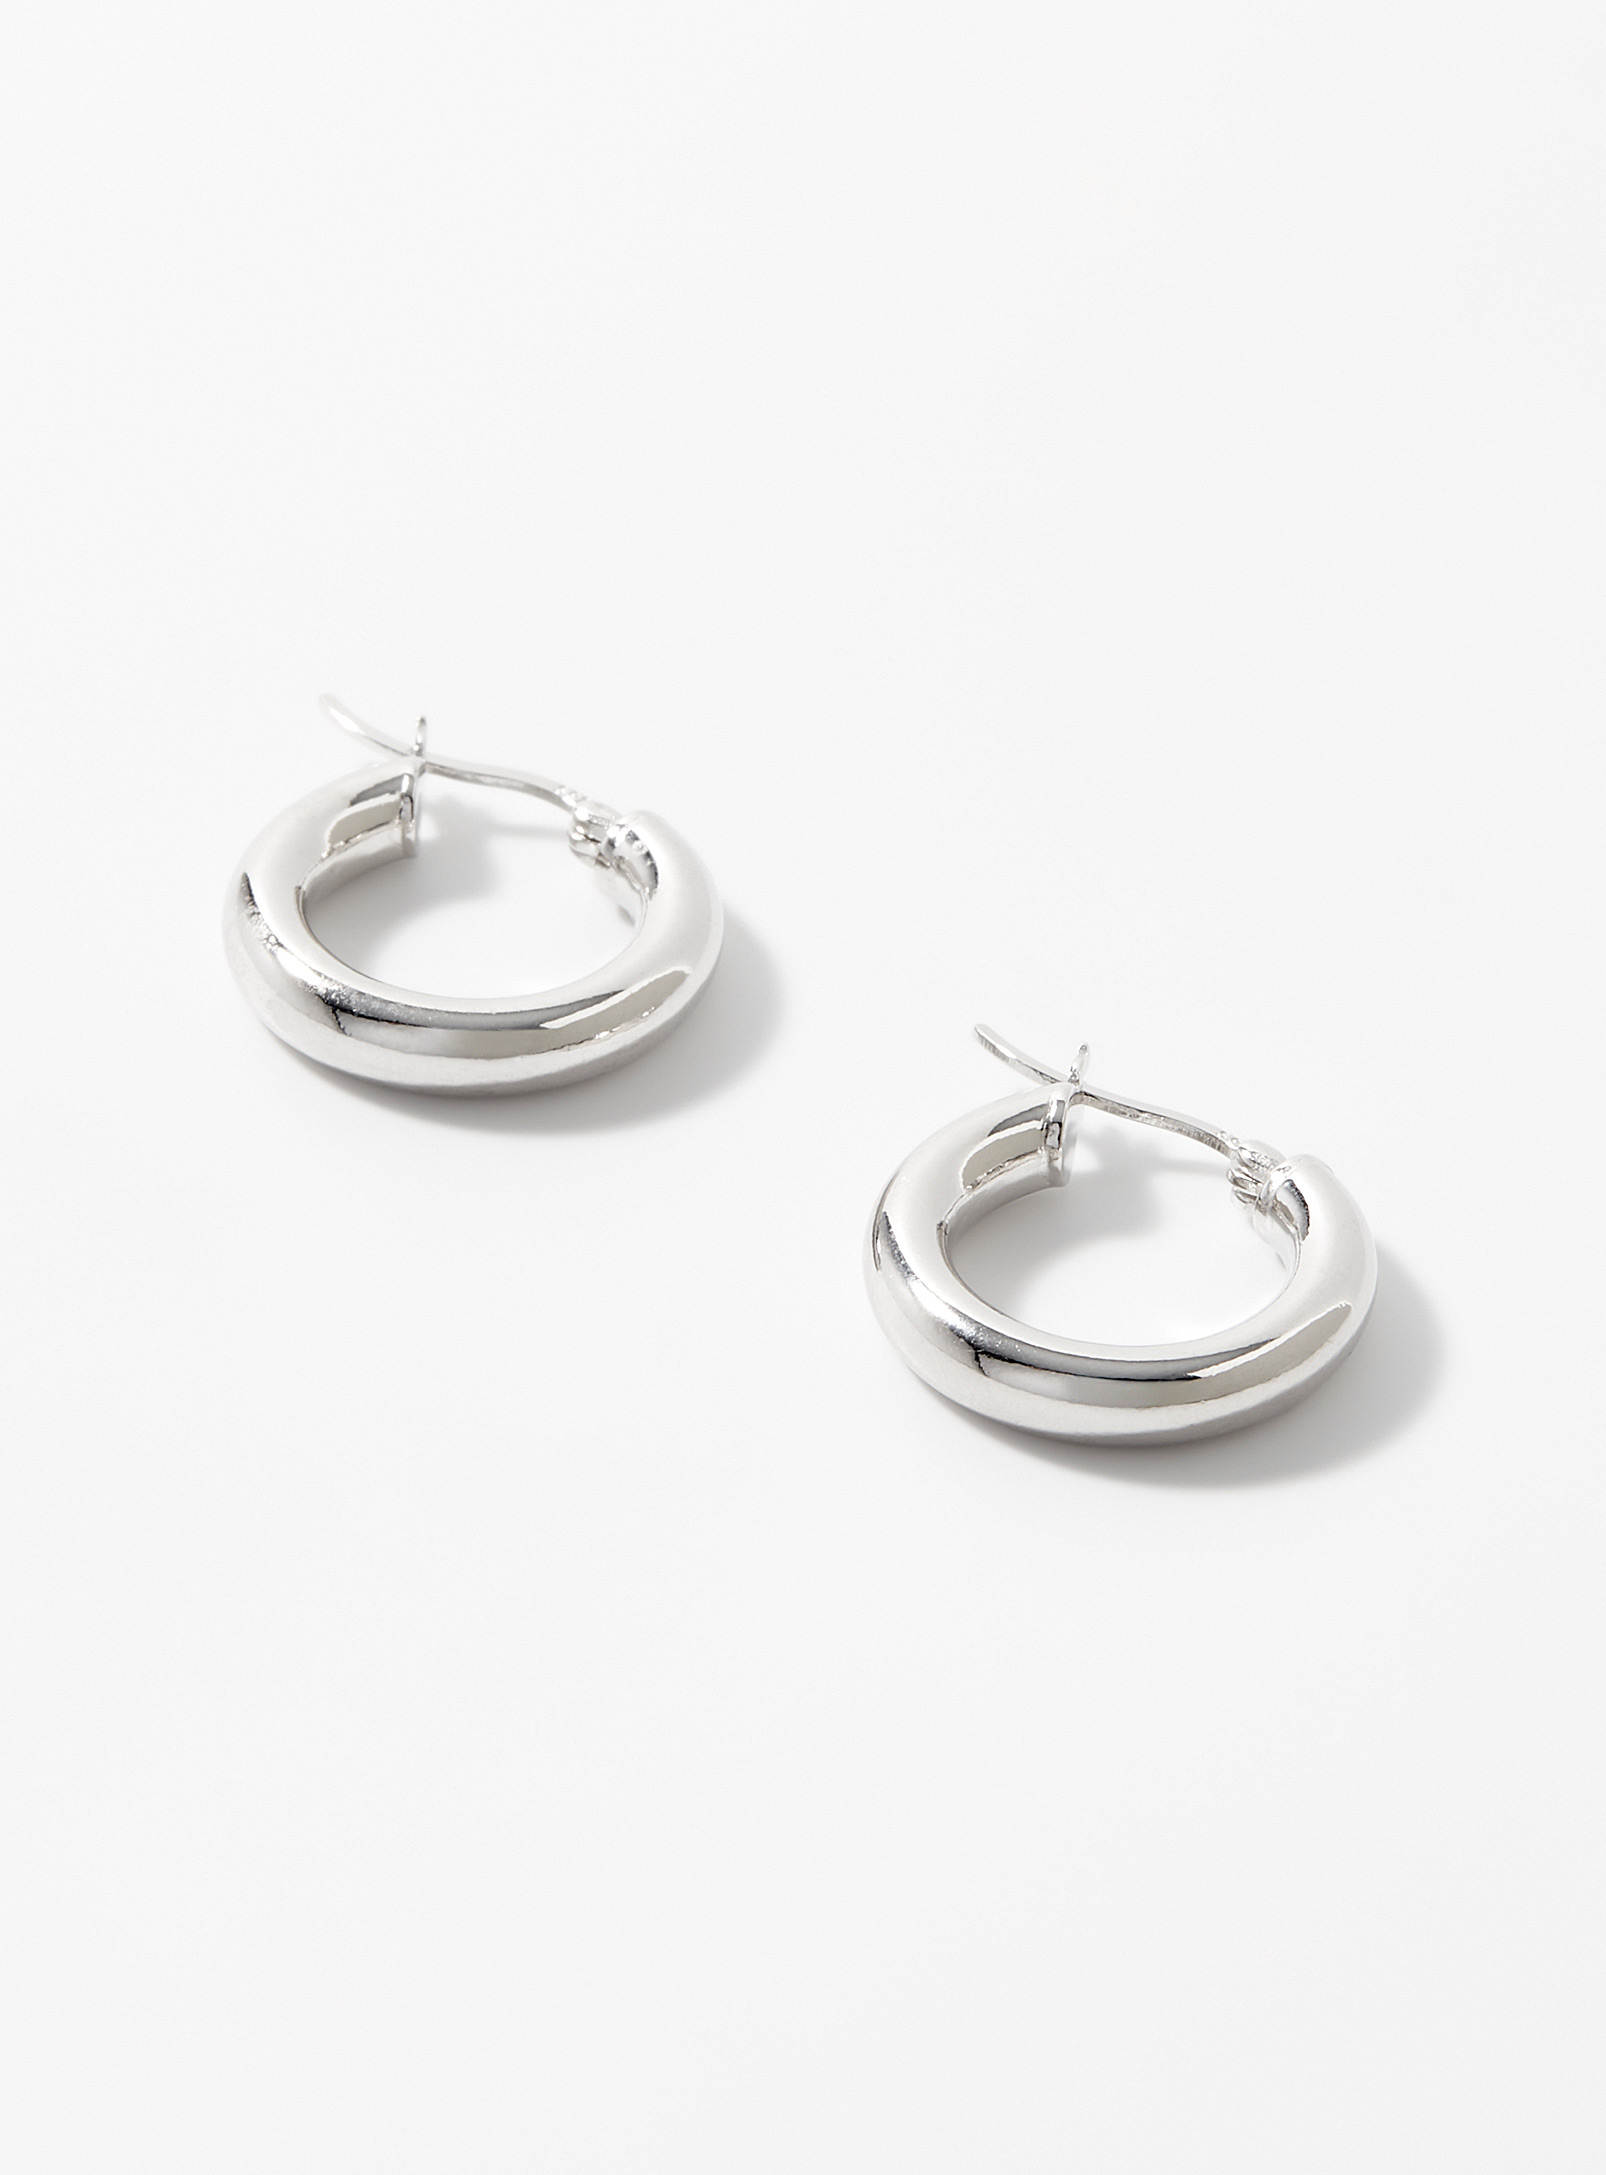 Simons - Women's Minimalist silver Hoop Earrings